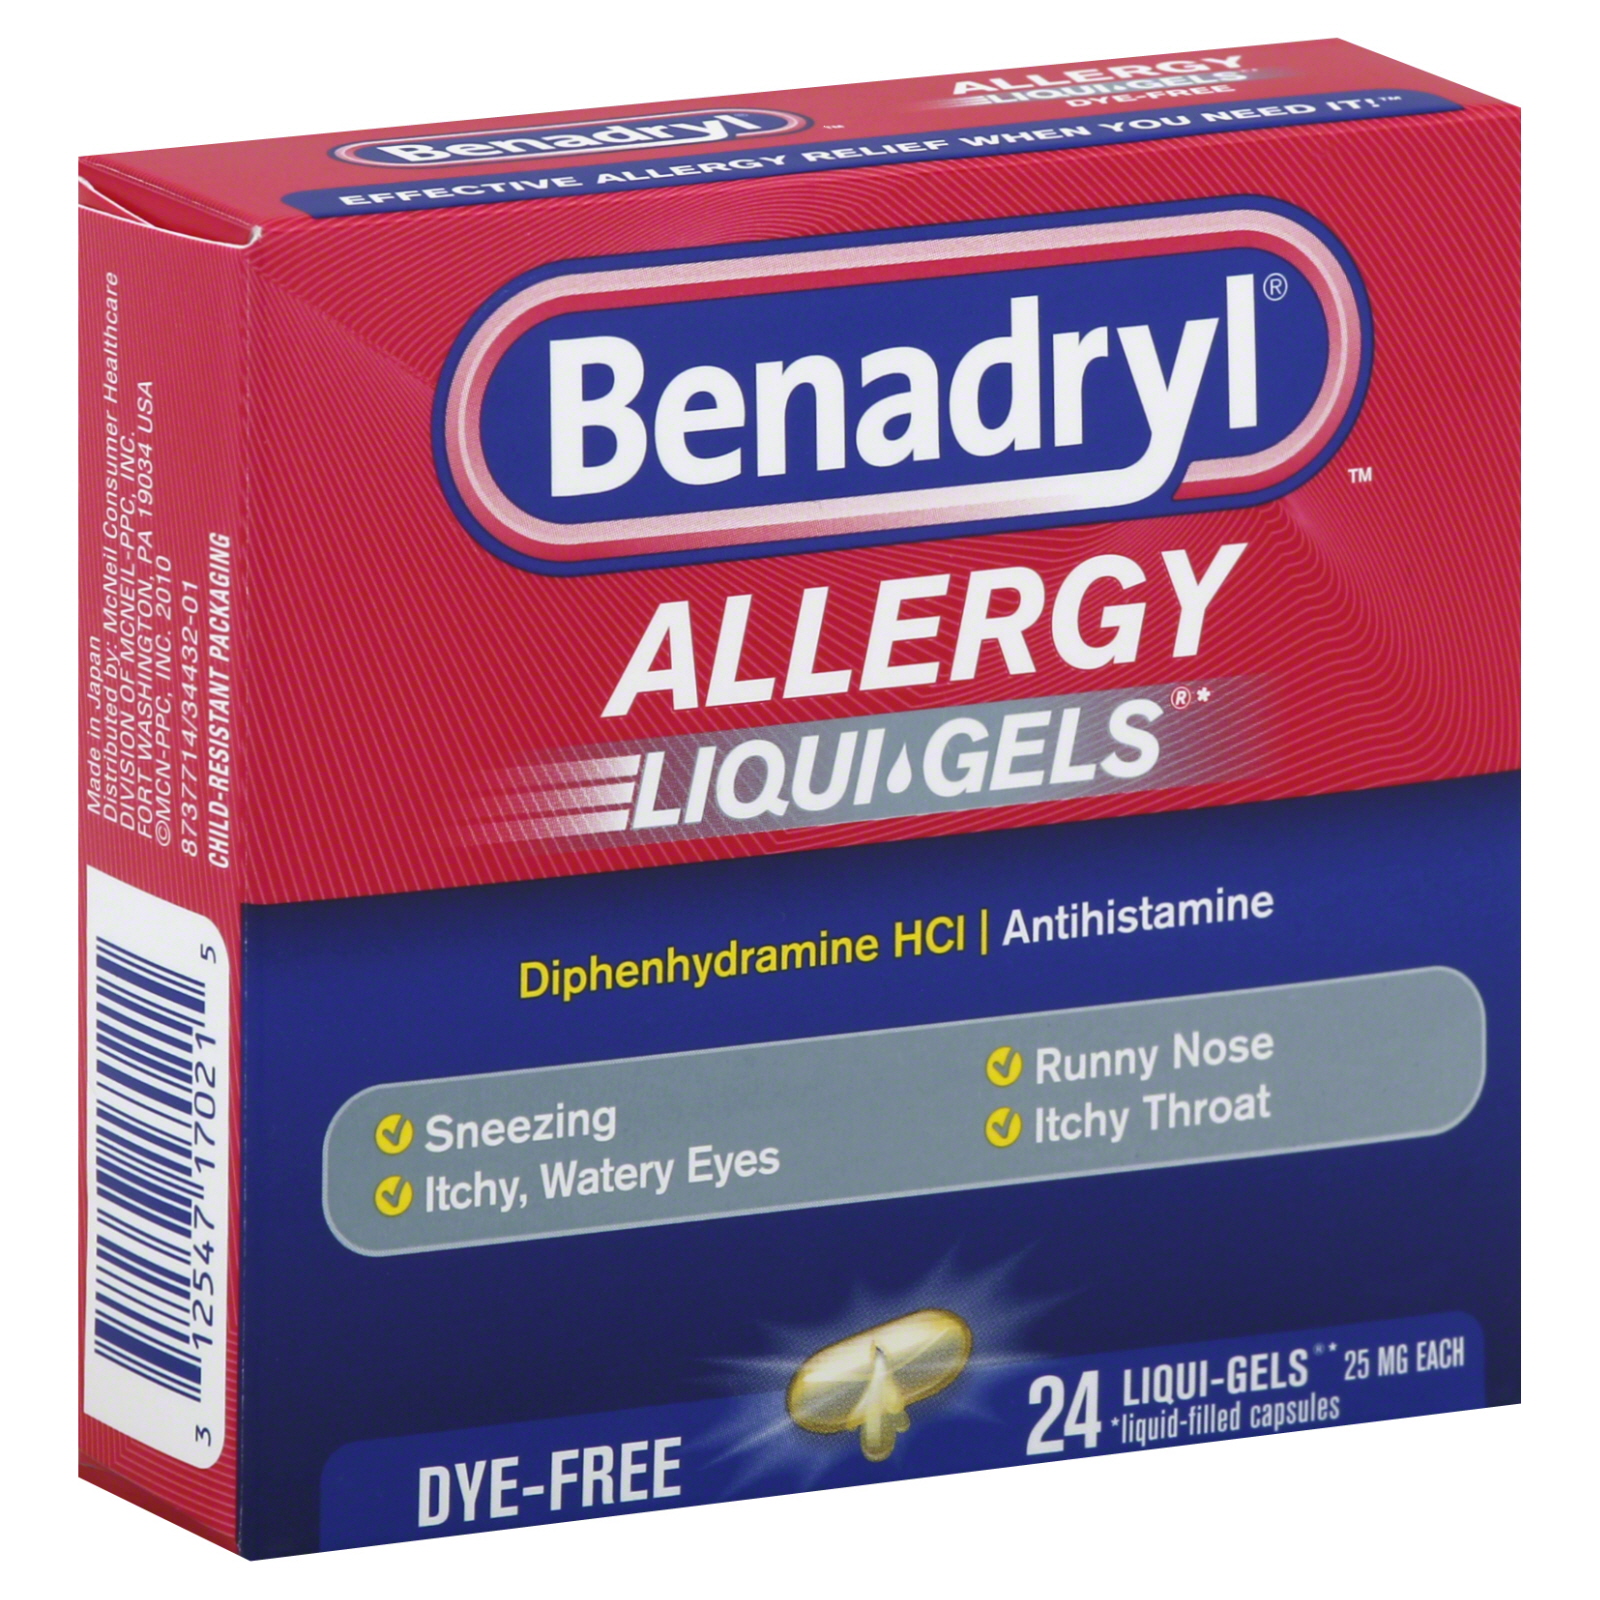 Allergy, 25 mg, Dye-Free, Liqui-Gels, 24 softgels